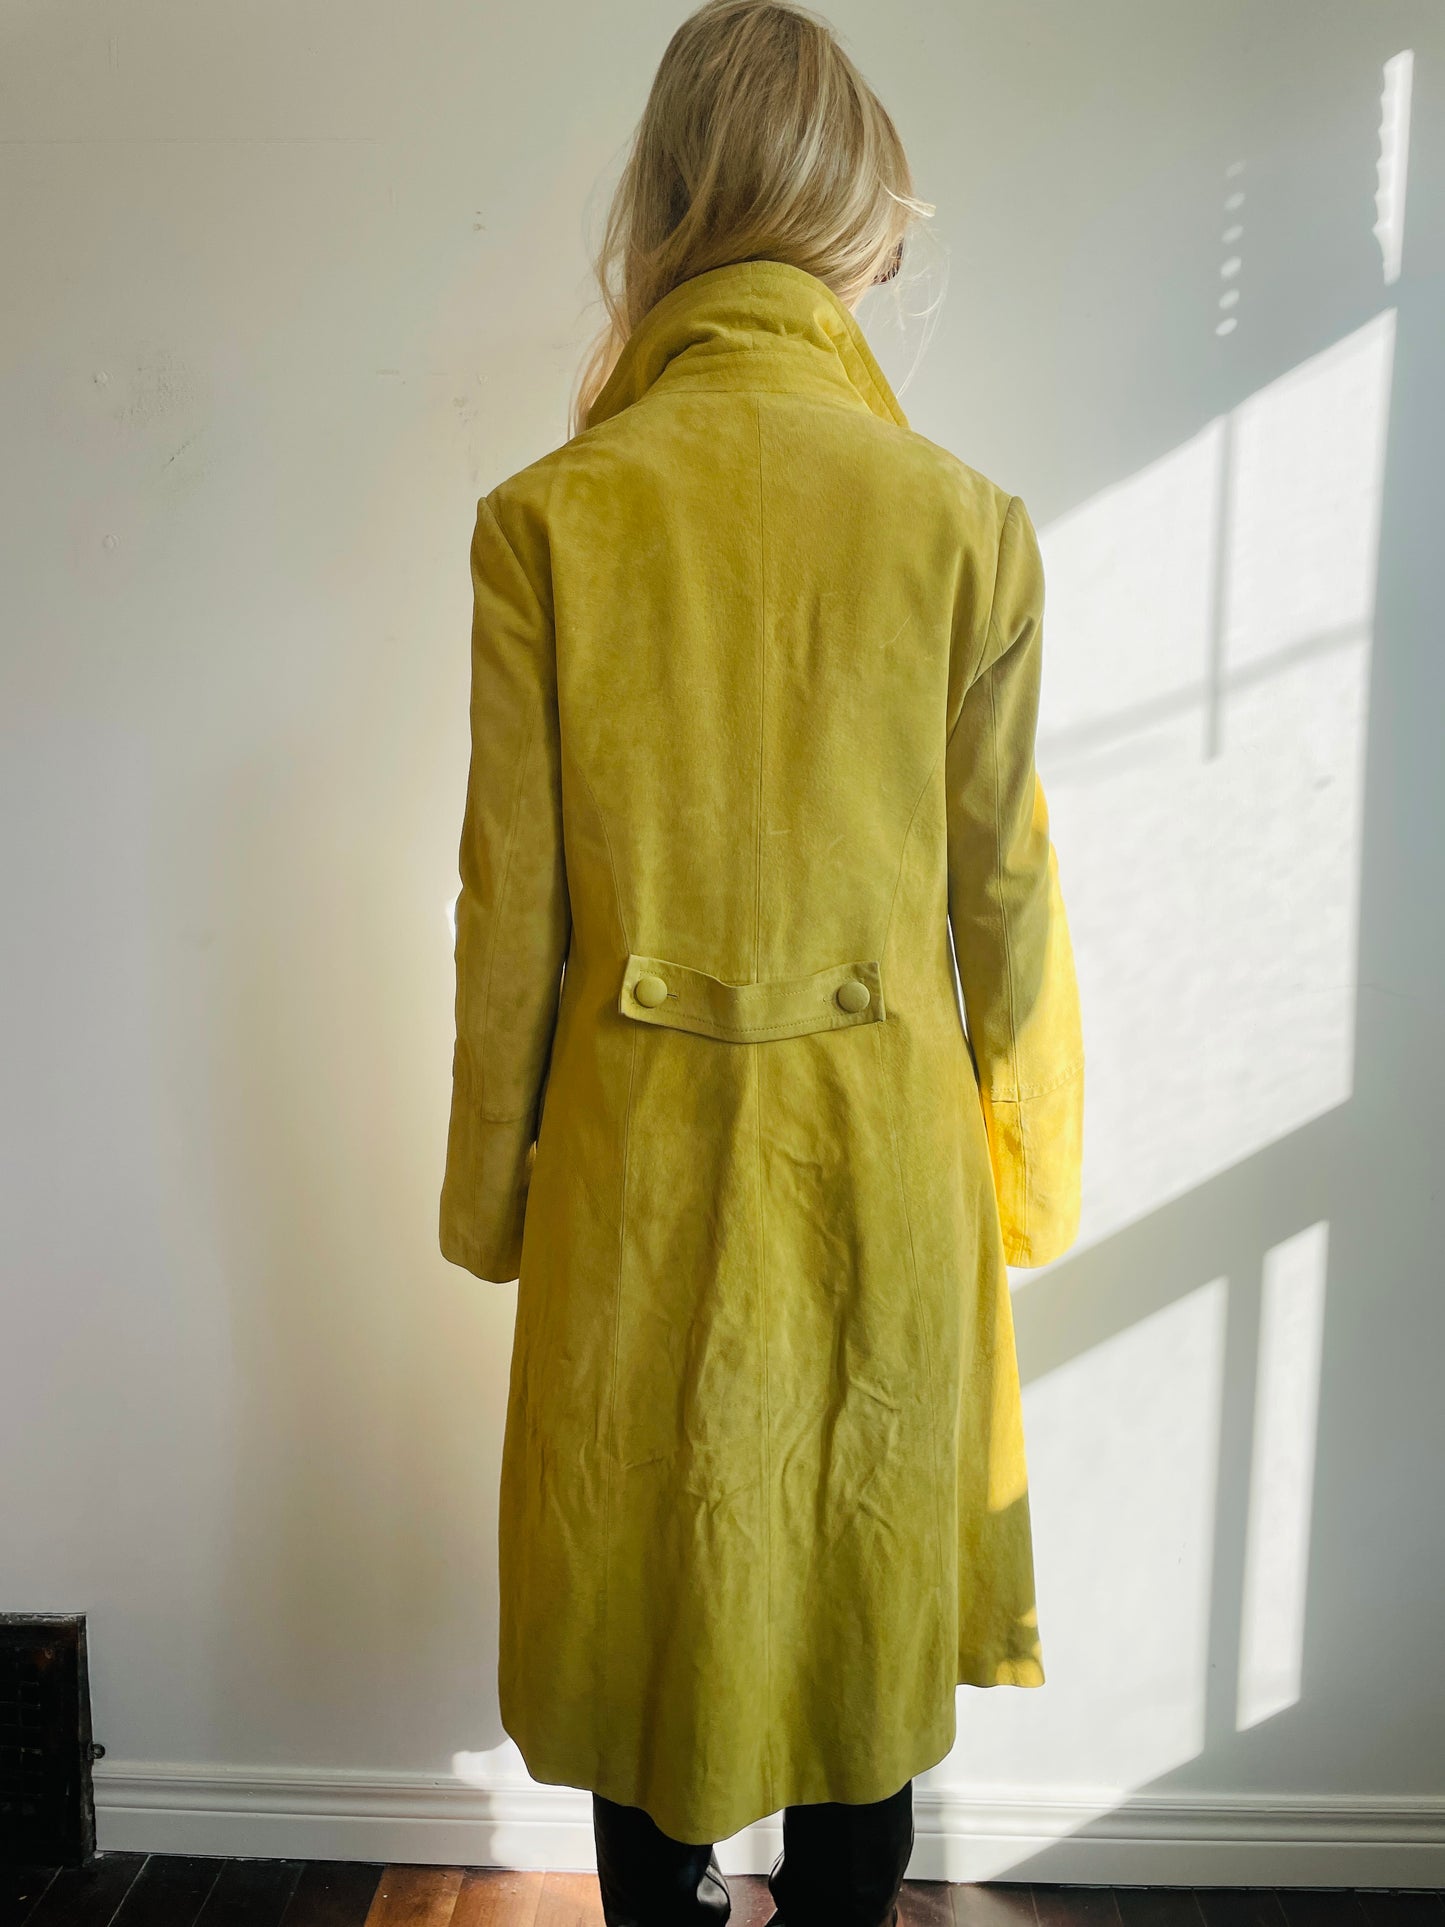 1990s Mustard Yellow Trench Coat Small